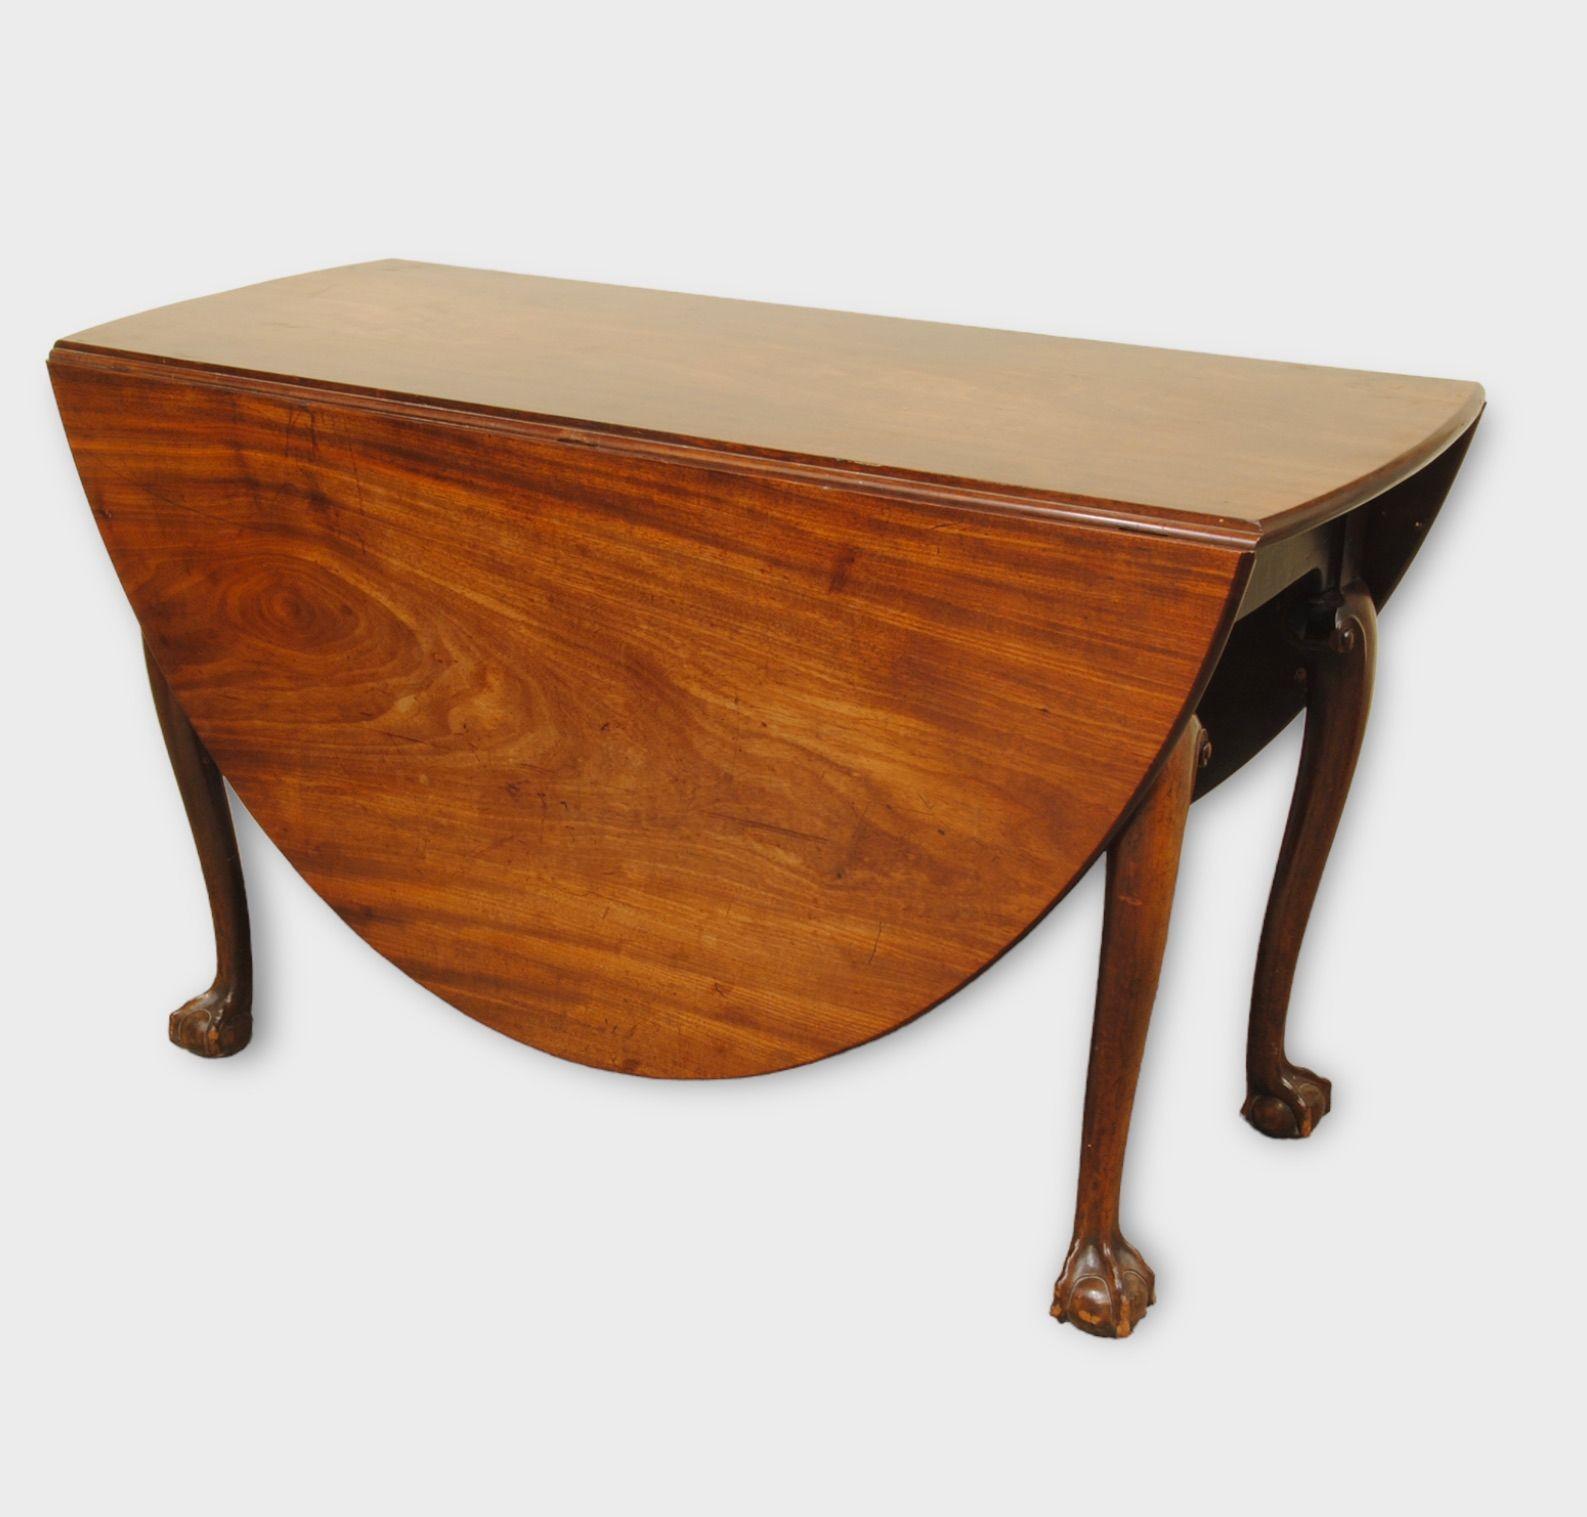 Table à abattant en acajou de belle couleur et de bonne qualité  avec des pieds à boule et à griffes bien sculptés. Superbe couleur et patine.
Circa 1770